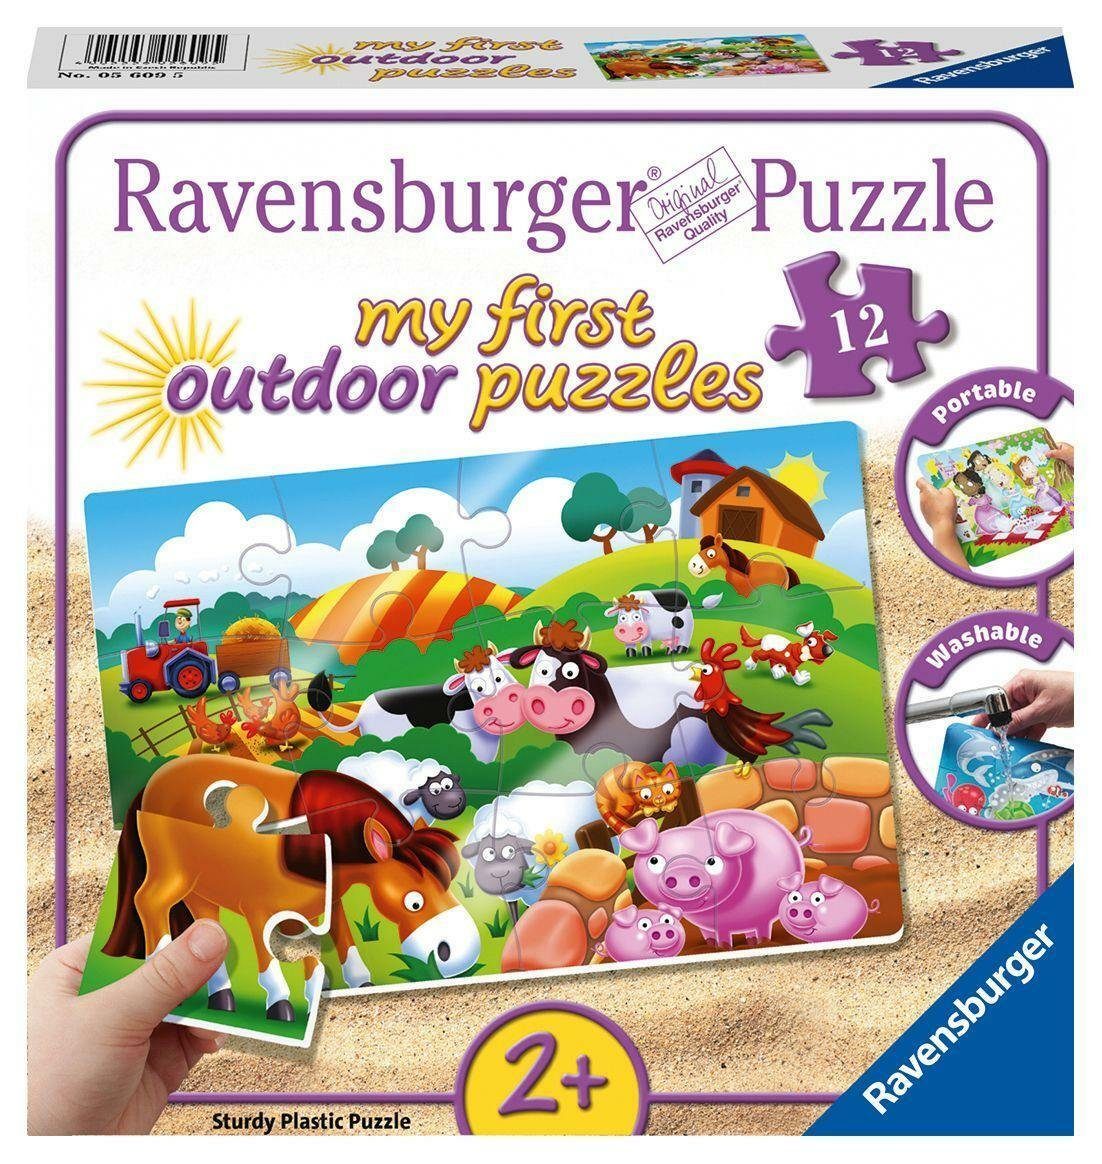 Ravensburger Puzzle Liebe Bauernhoftiere. Puzzle 12 Teile, 12 Puzzleteile